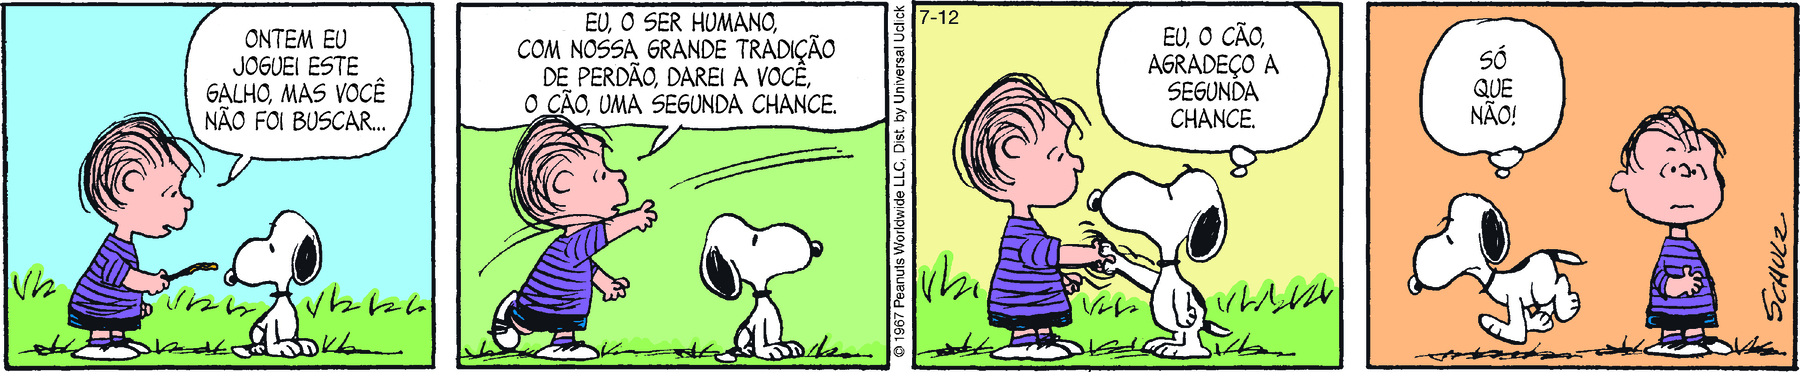 Tirinha. Em quatro cenas. Personagens: Linus, um menino com pouco cabelo, usando blusa roxa listrada e short. Snoopy, um cachorro branco com orelhas pretas caídas. Eles estão em uma área verde. Cena 1. Linus, segurando um graveto na direção de Snoopy, diz: ONTEM EU JOGUEI ESTE GALHO, MAS VOCÊ NÃO FOI BUSCAR... Ao lado, Snoopy, sentado, olha para o graveto. Cena 2. Linus, jogando o graveto, diz: EU, O SER HUMANO, COM NOSSA GRANDE TRADIÇÃO DE PERDÃO, DAREI A VOCÊ, O CÃO, UMA SEGUNDA CHANCE. Ao lado, Snoopy, sentado, olha na direção em que o graveto é jogado. Cena 3. Snoopy está de pé, apertando a mão de Linus, e pensa: EU, O CÃO, AGRADEÇO A SEGUNDA CHANCE. Linus olha para Snoopy sem expressão. Cena 4. Snoopy, caminhado para a esquerda, se afastando de Linus, pensa: SÓ QUE NÃO. Ao lado, Linus, com expressão confusa, olha para frente.